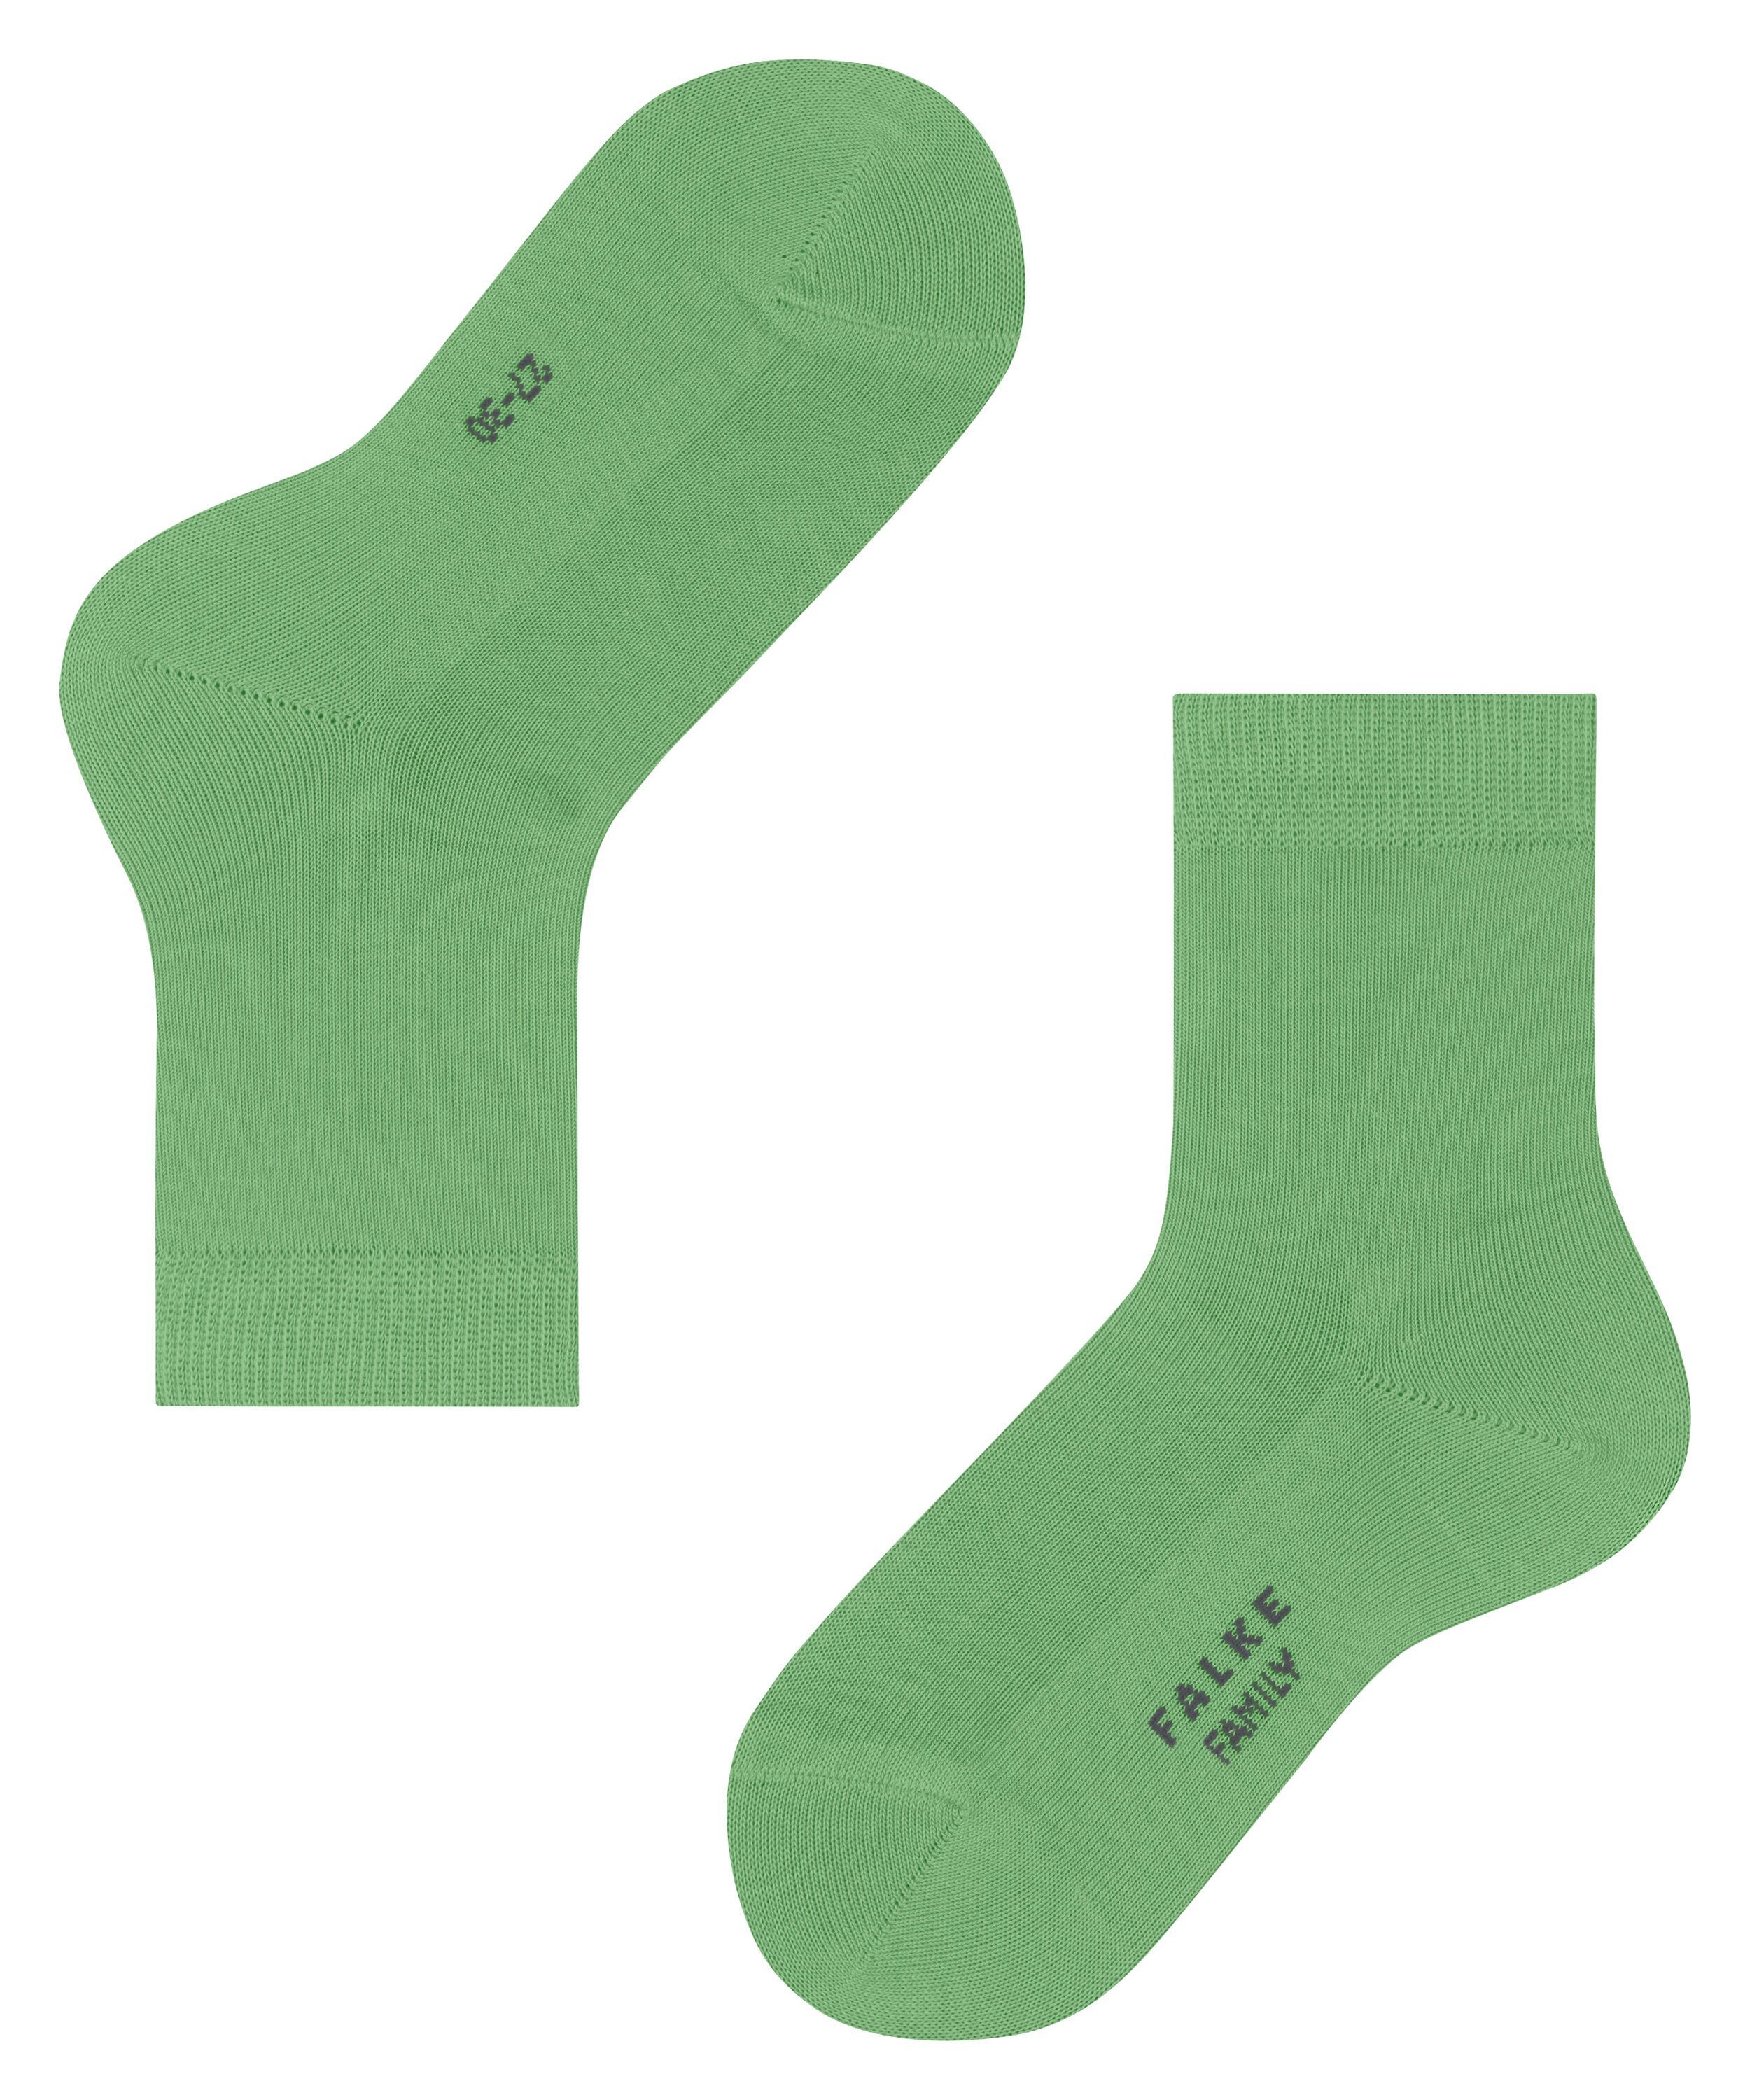 Socken (7486) Family (1-Paar) lizzardgreen FALKE